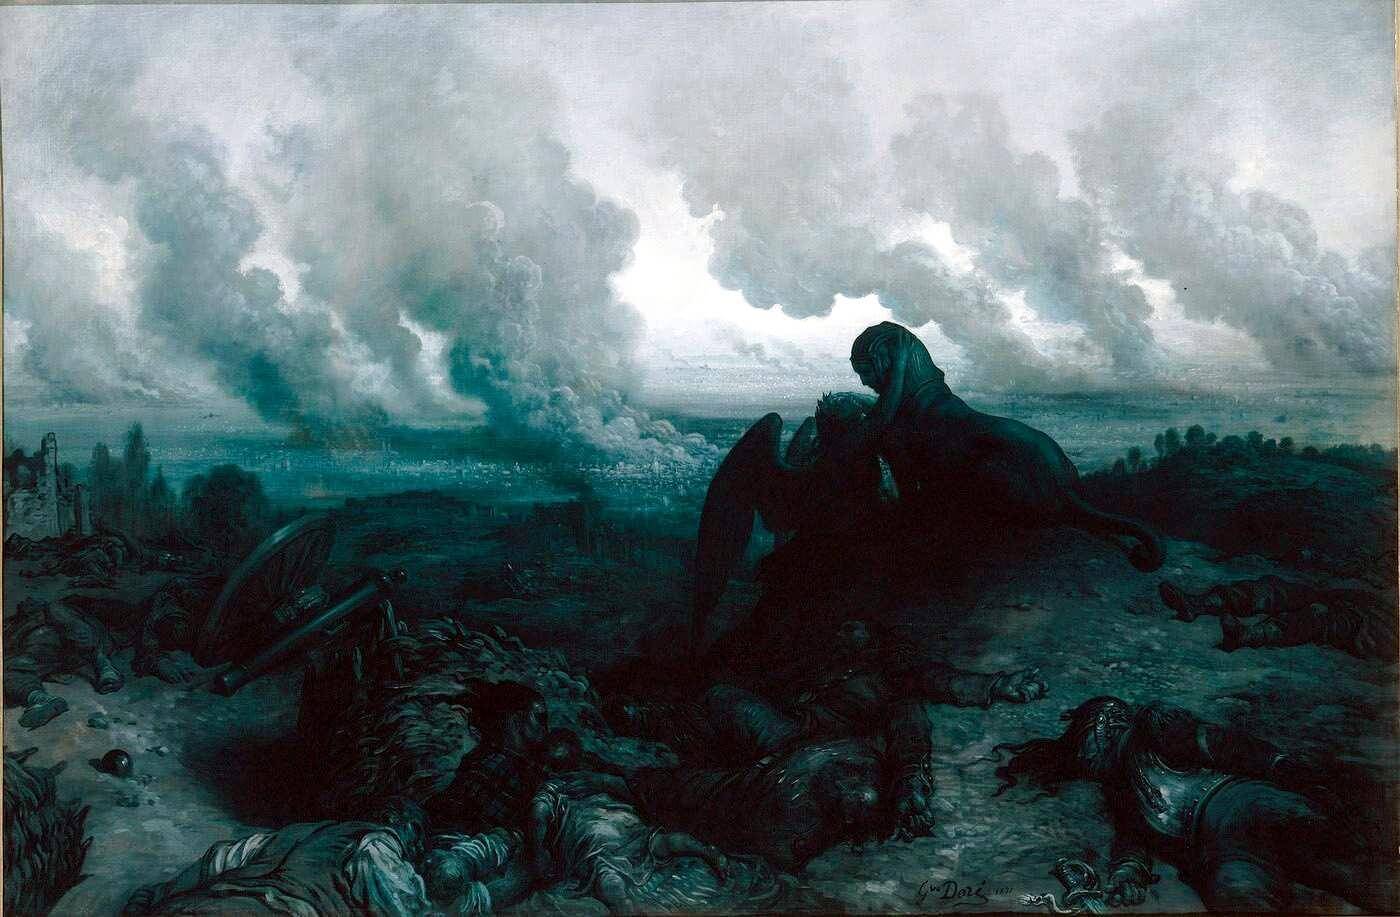 mousqueton d'artillerie et fusil 1874 Gras: L'année terrible, de Gustave Doré. 1871